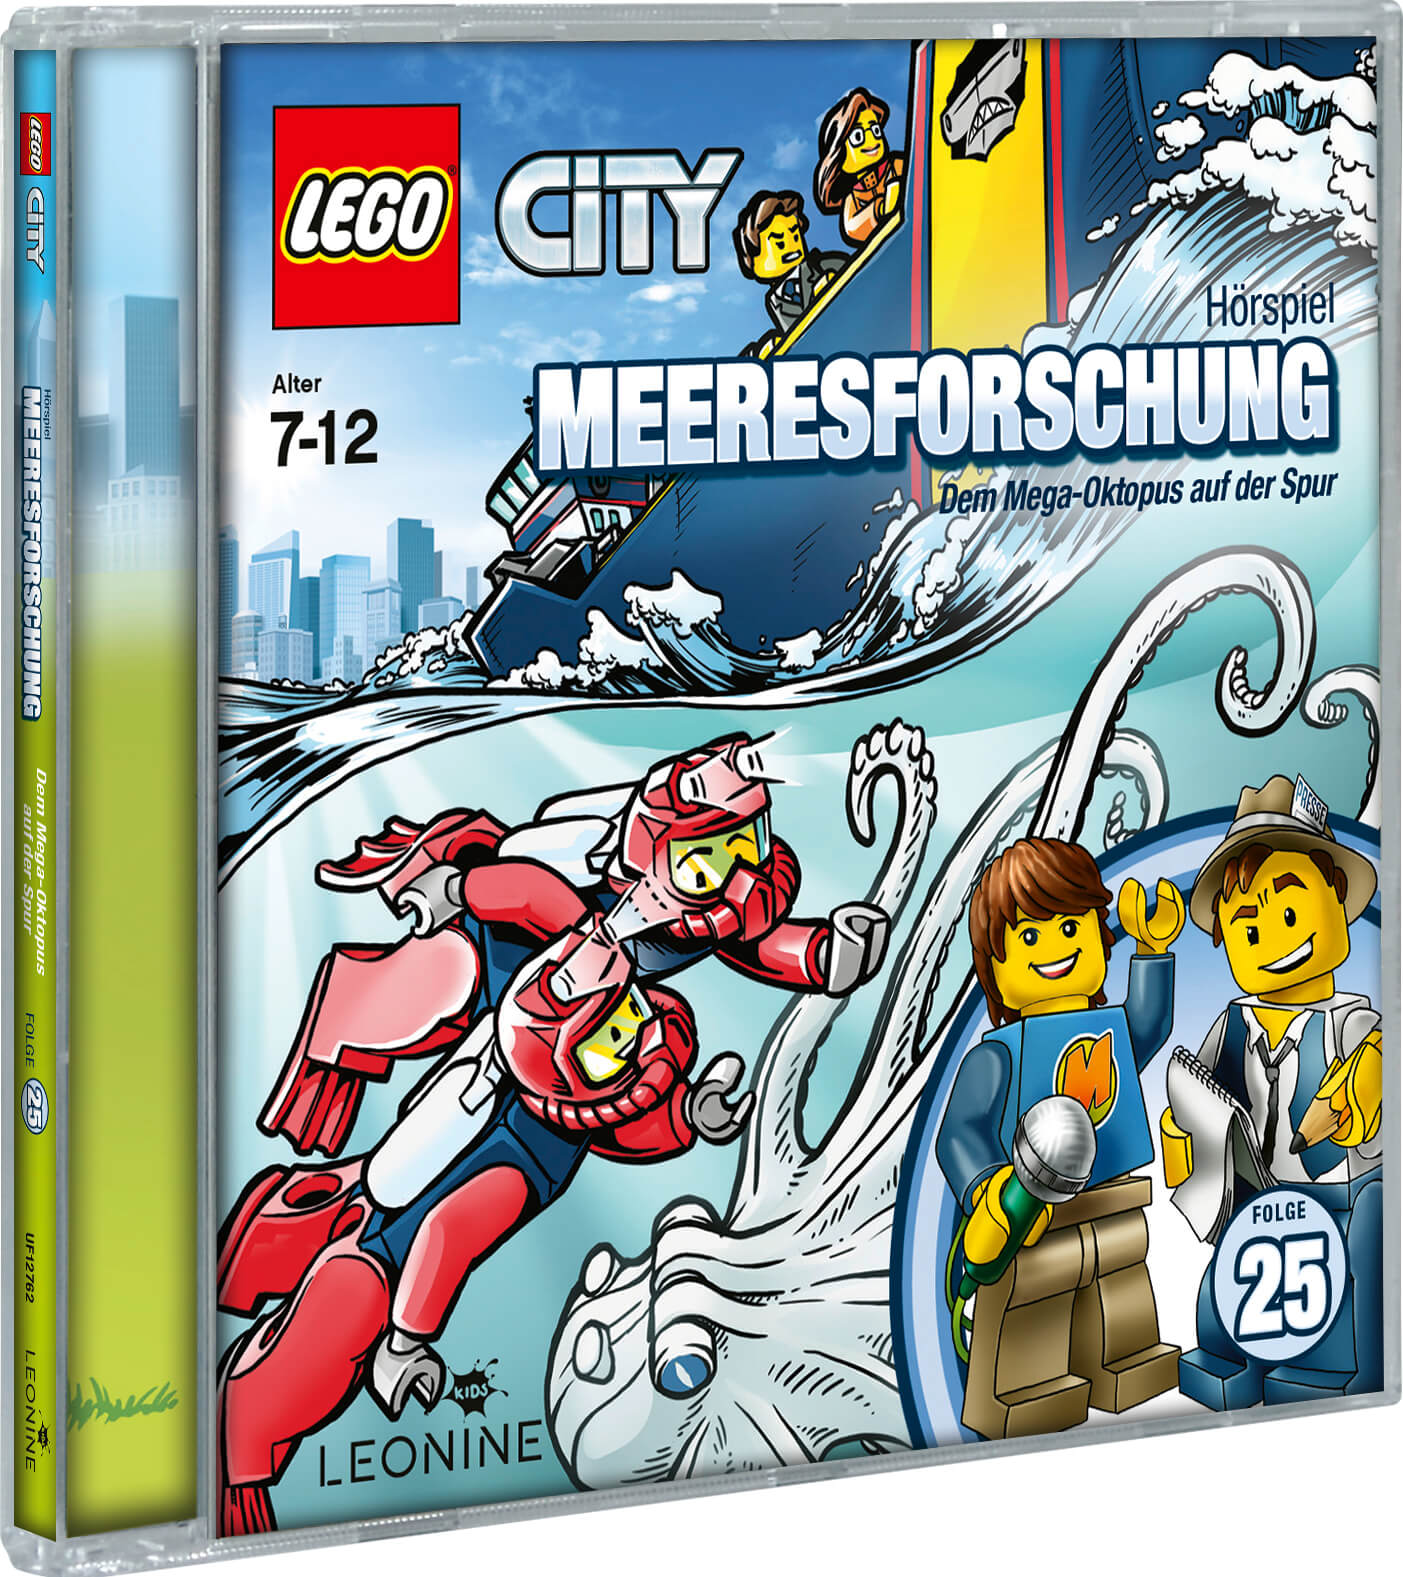 Gewinnspiel Wir verlosen Lego City CD 25 Hörspiele